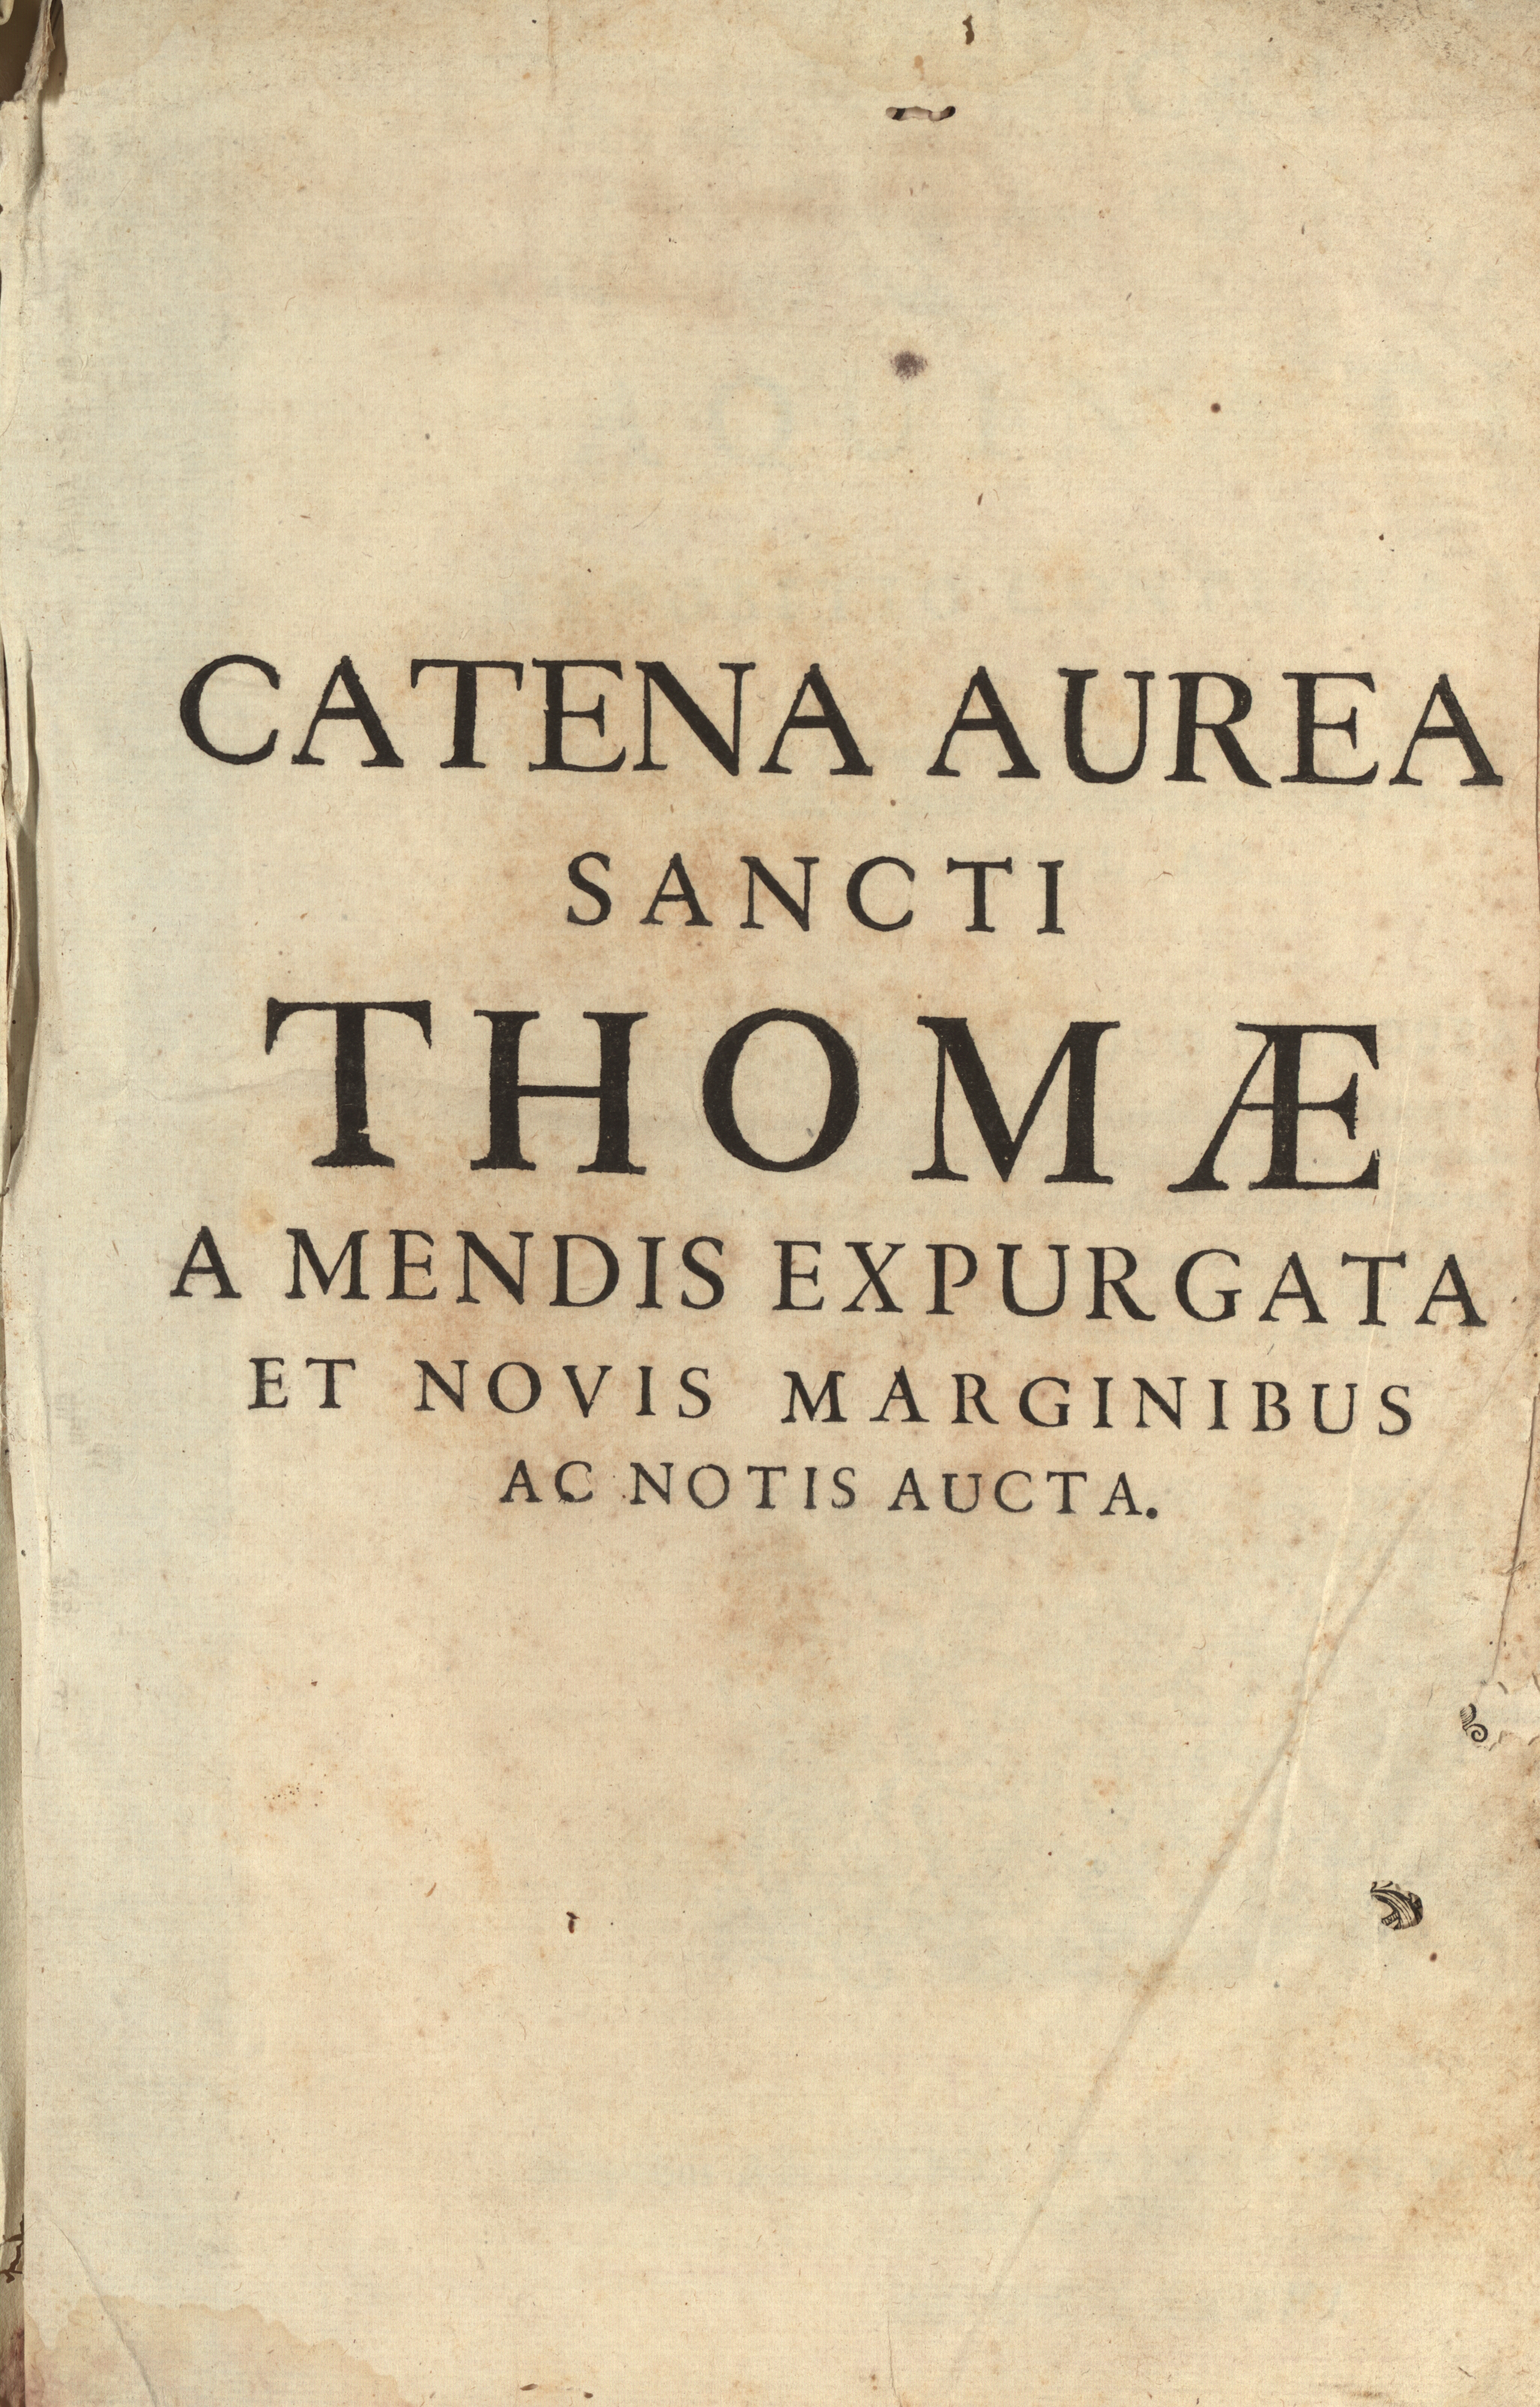 Catena Aurea Sancti Thomae a mendis expurgata et novis marginibus ac notis aucta